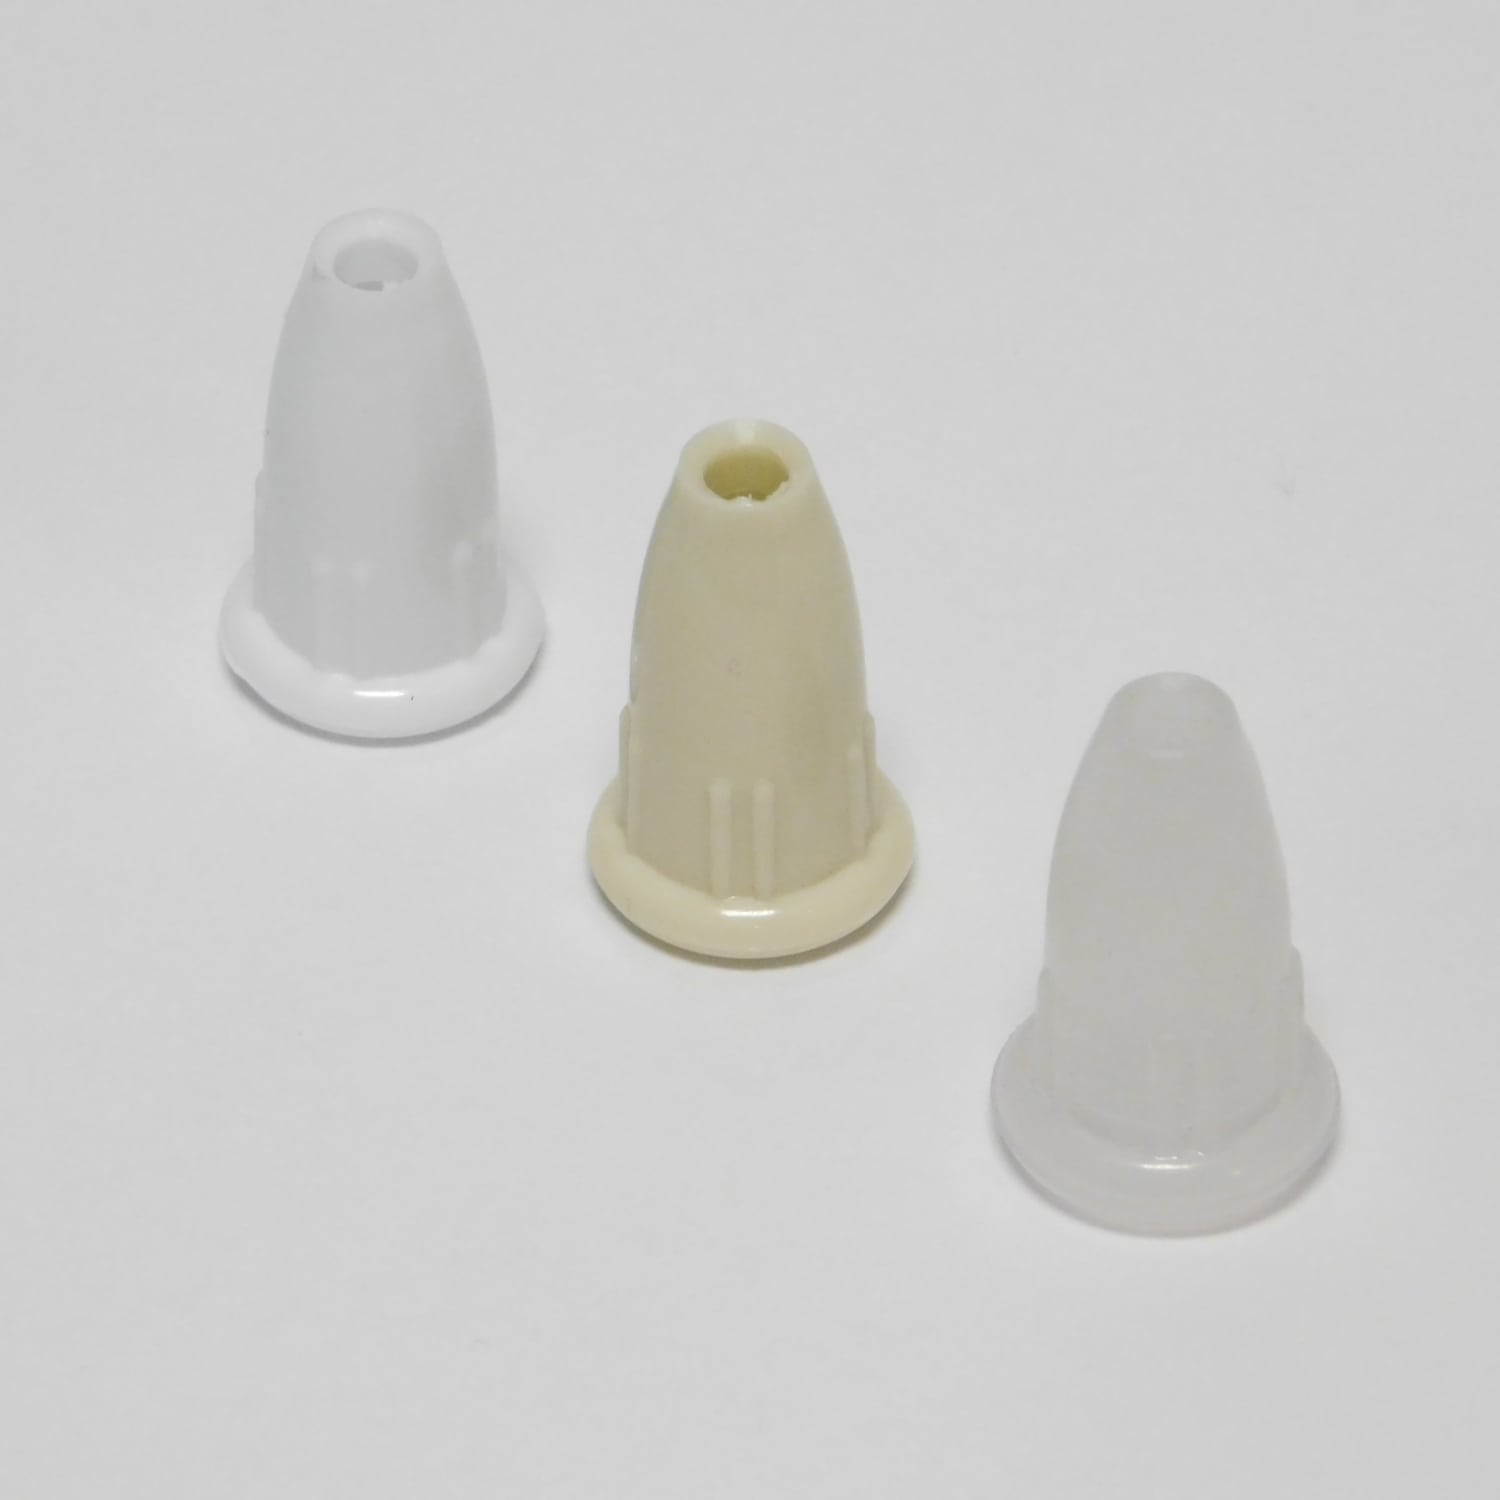 NEW Plastic Cord TASSELs color VANILLA Qty of 500 Shade Blind Pull Tassel 